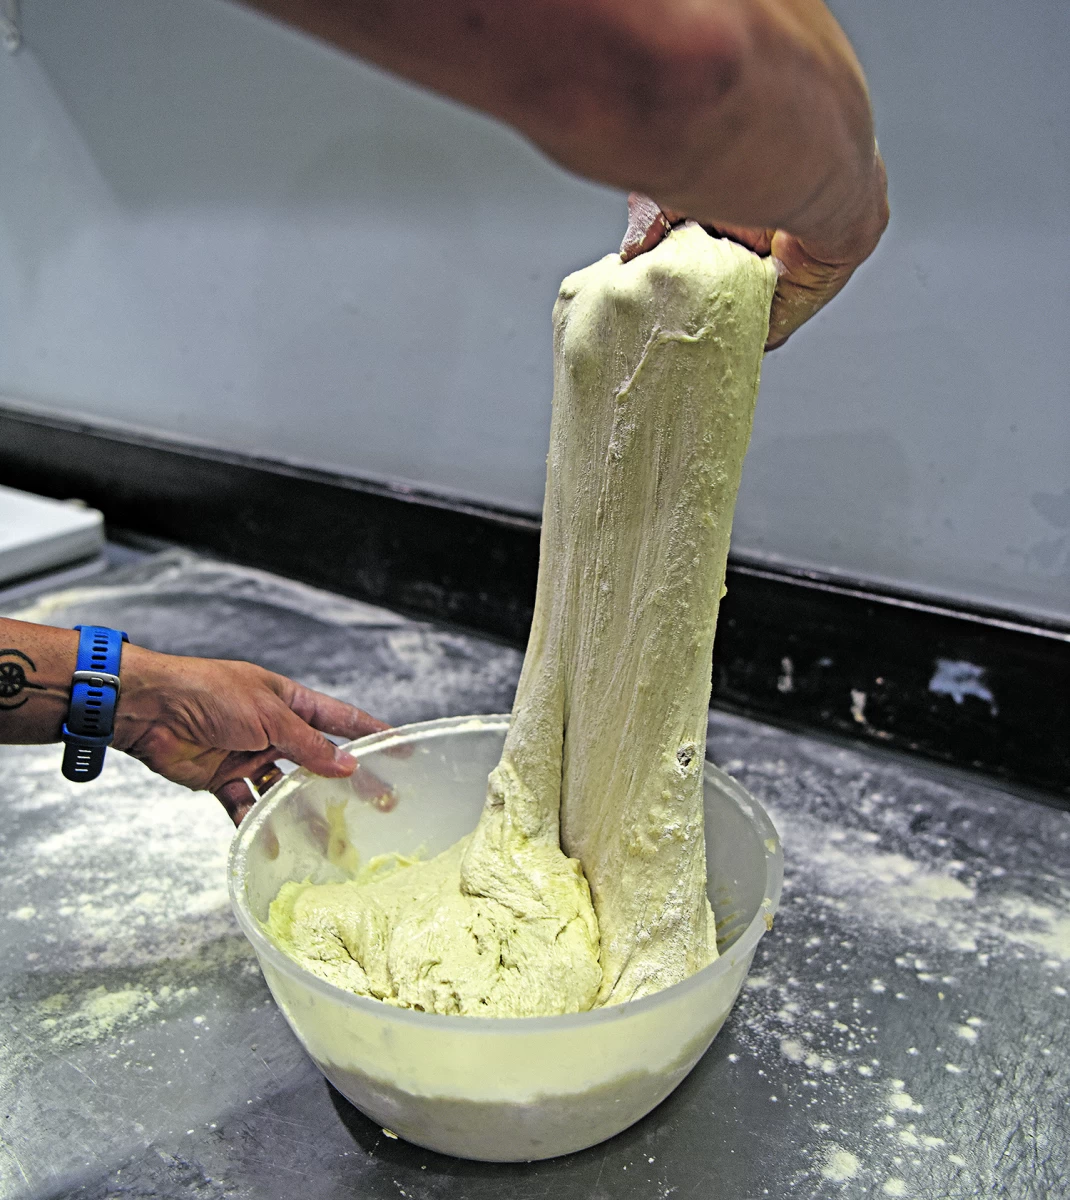 ELABORACIÓN. El pan de masa madre usa como fermento la mezcla de harina y agua, que debe reposar varios días.